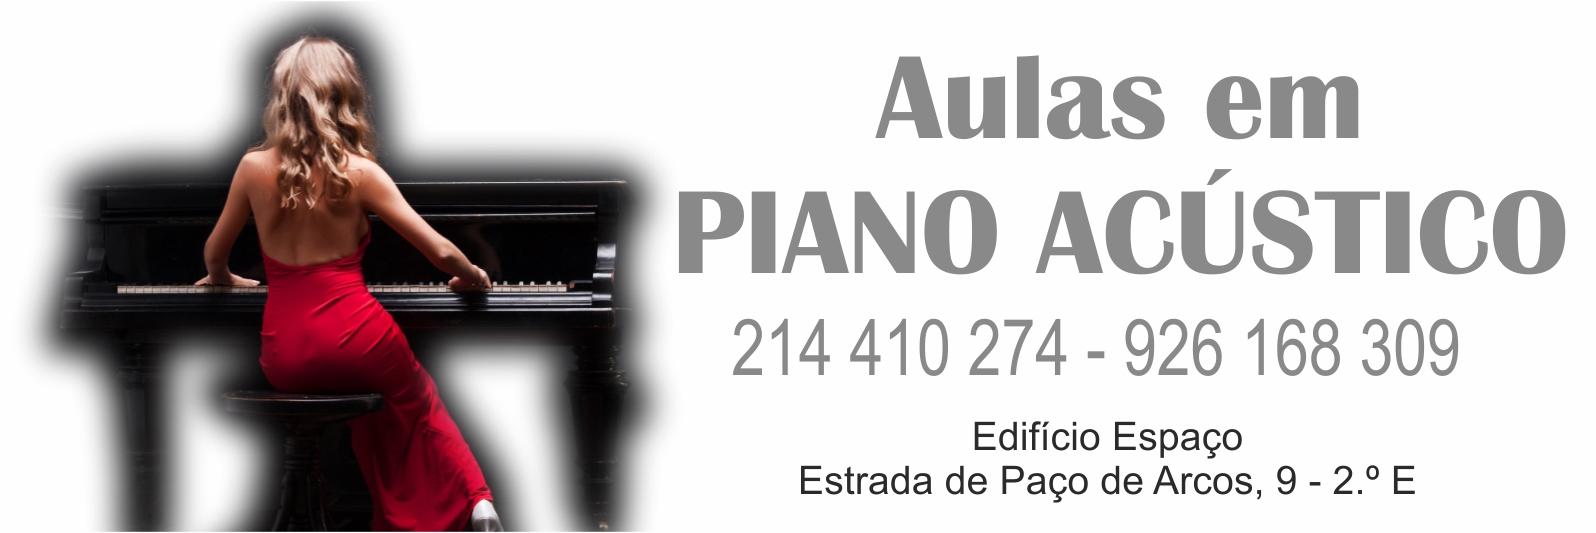 slider 05 - PIANO